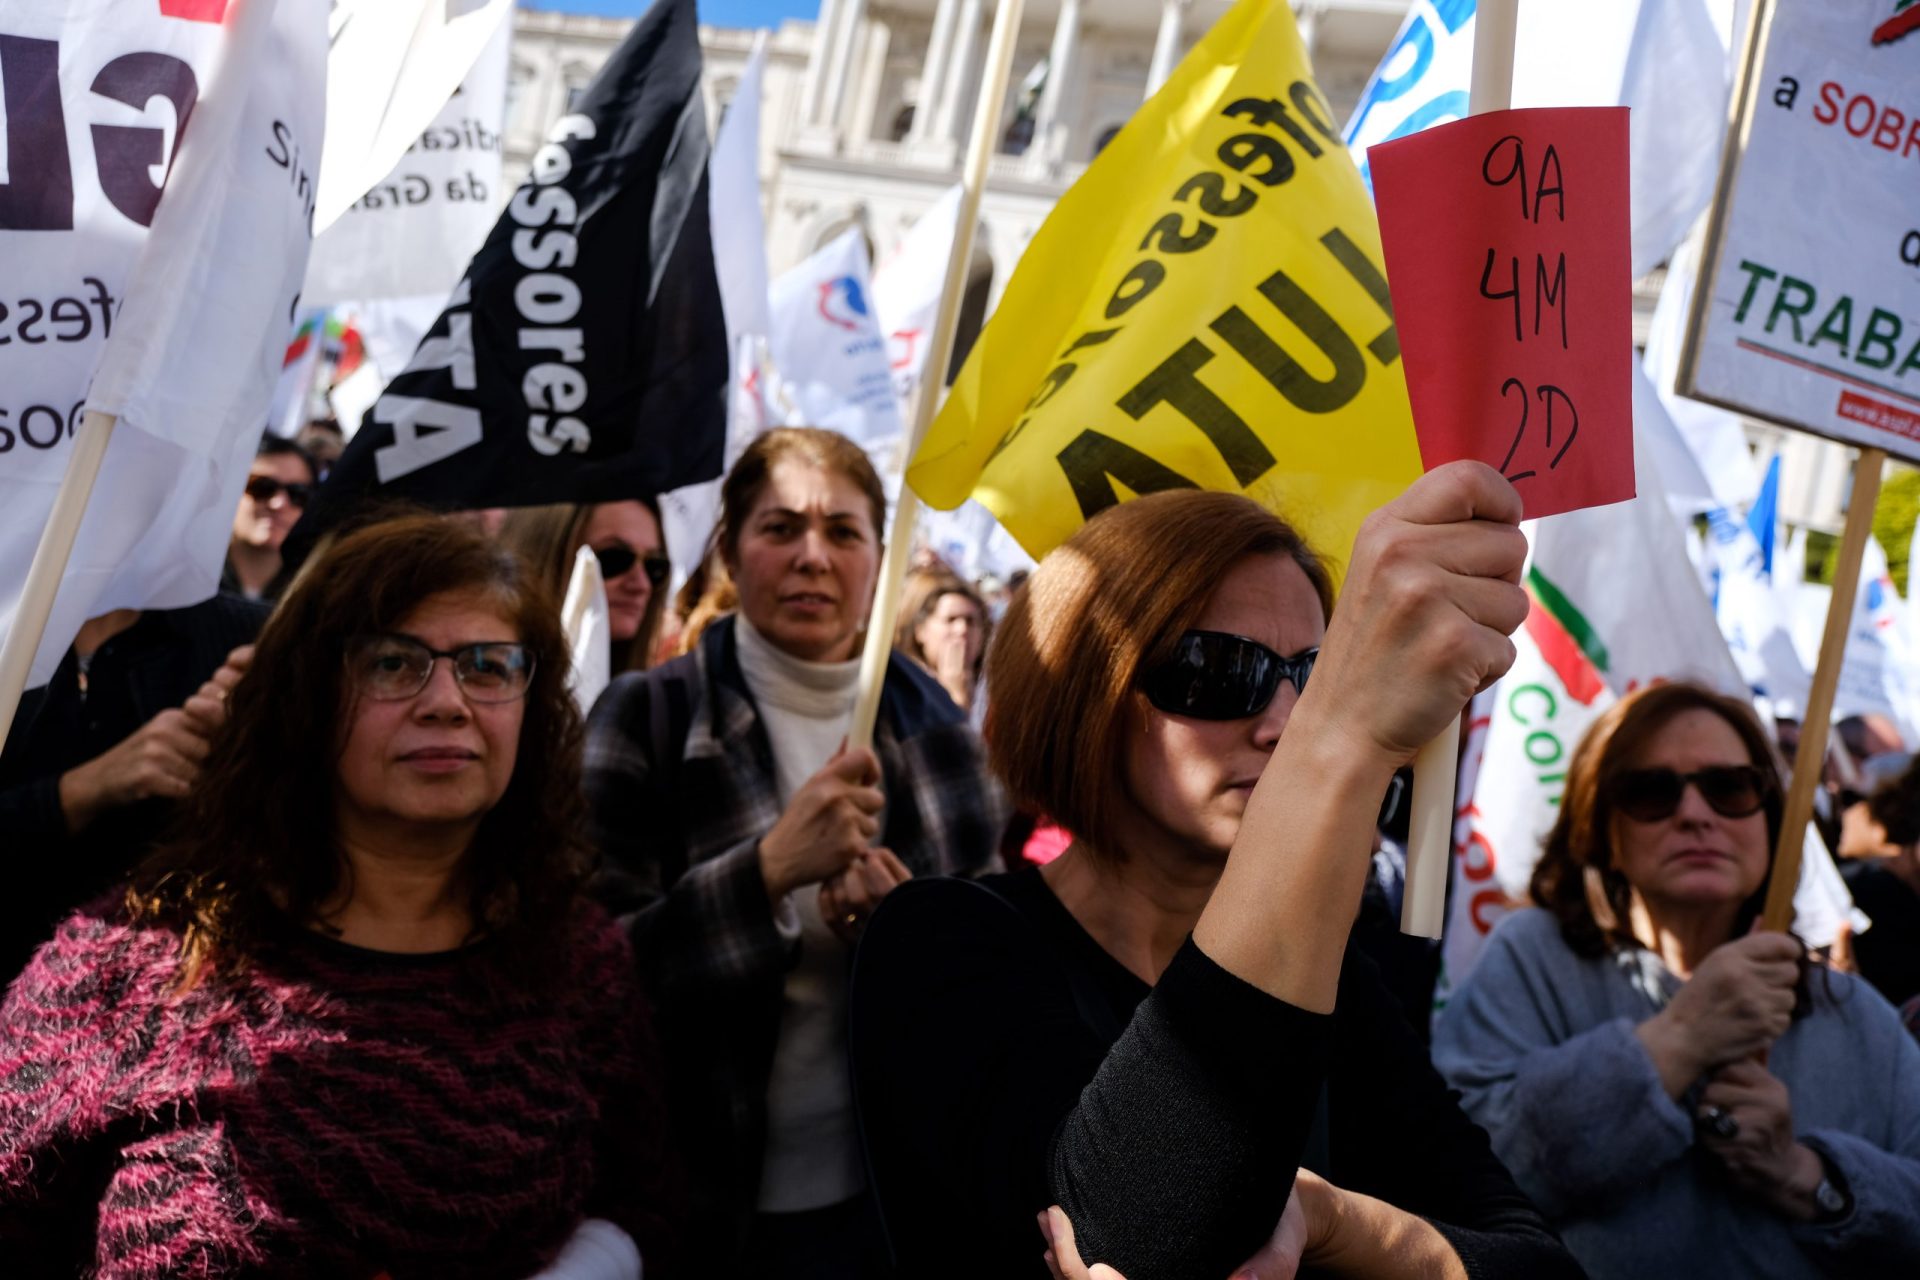 Proposta do governo é “uma afronta aos professores” critica sindicato